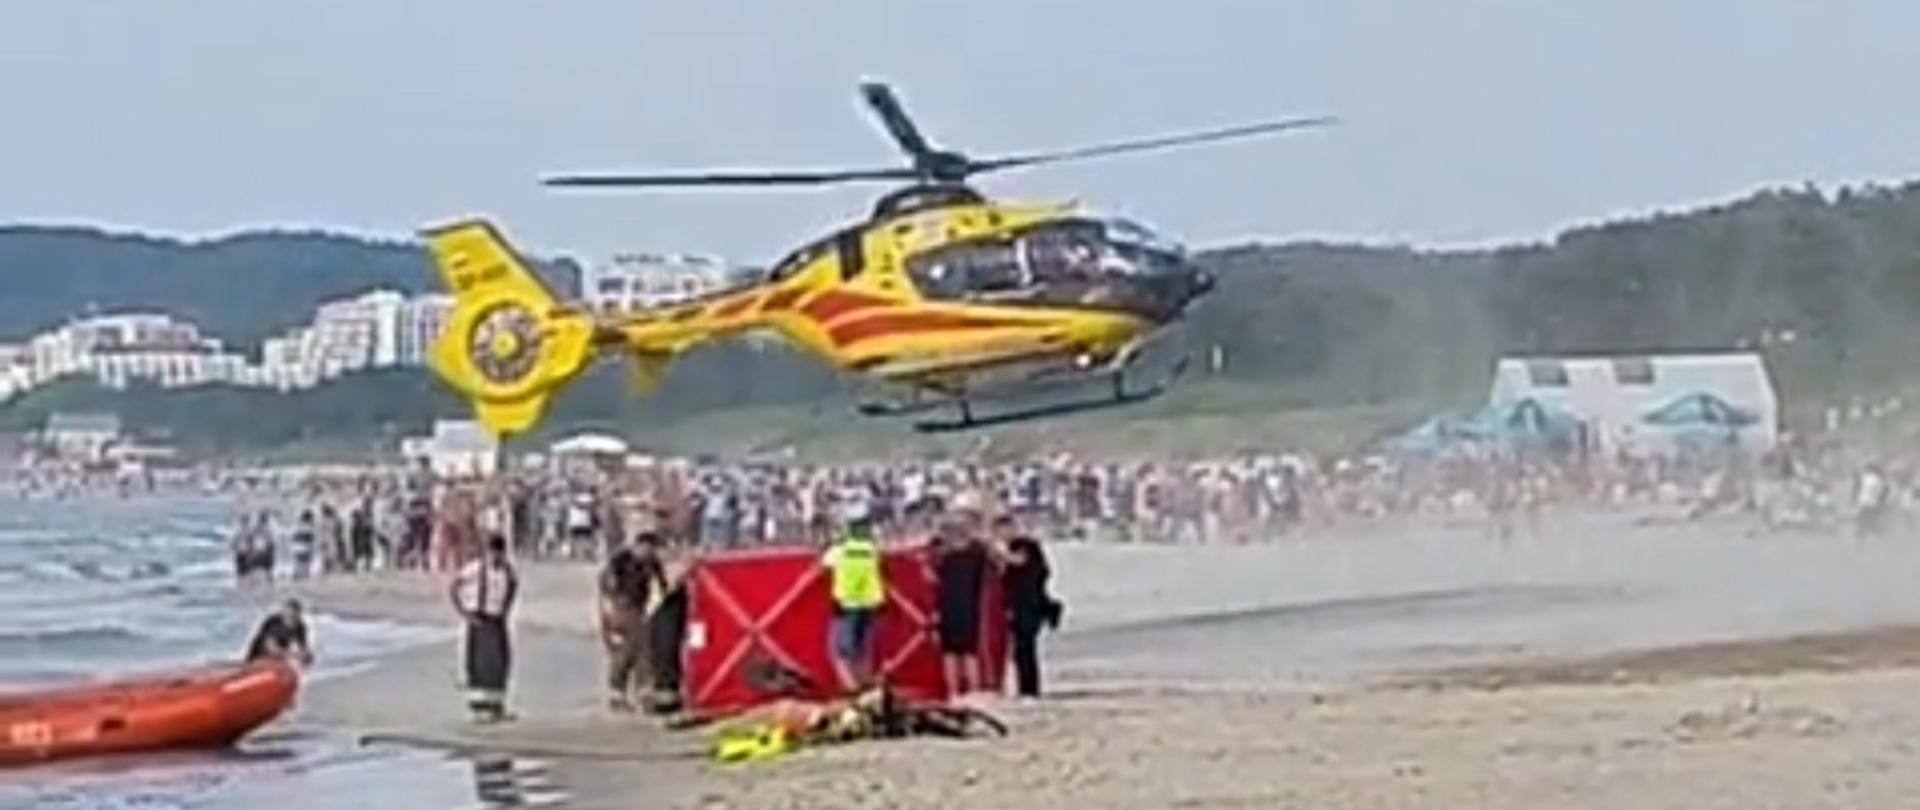 Zdjęcie przedstawia helikopter startujący na plaży w czasie akcji ratowniczej.